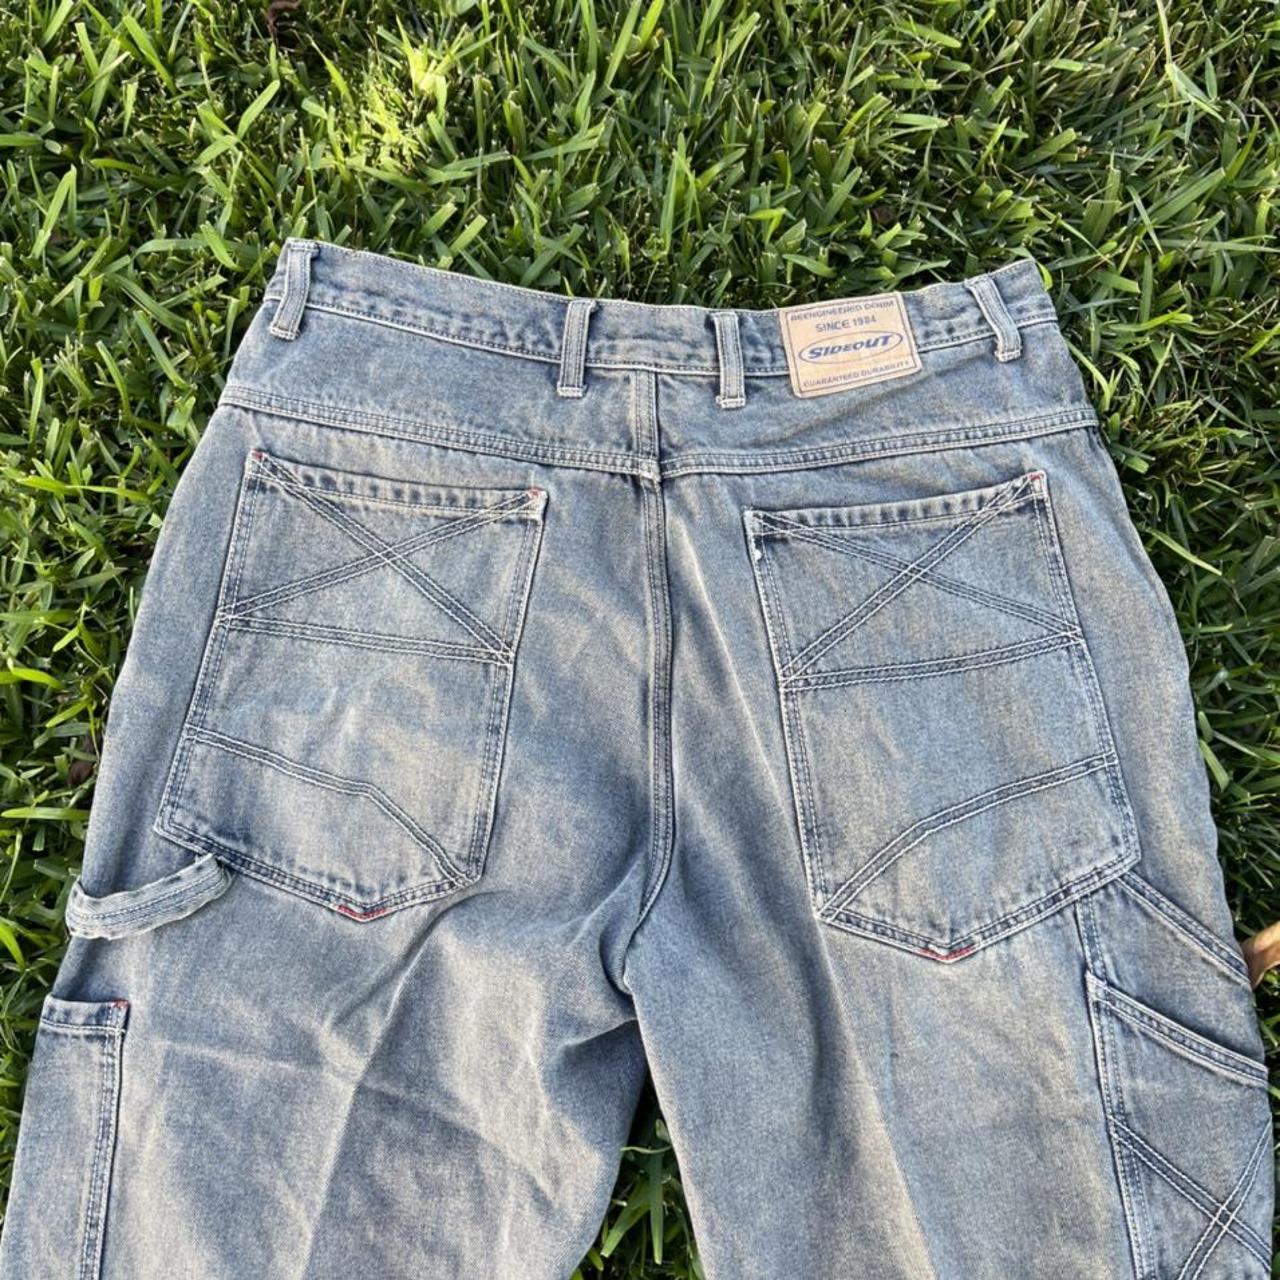 90’s Sideout Men’s Jeans Size 38x30 #90s #vintage... - Depop